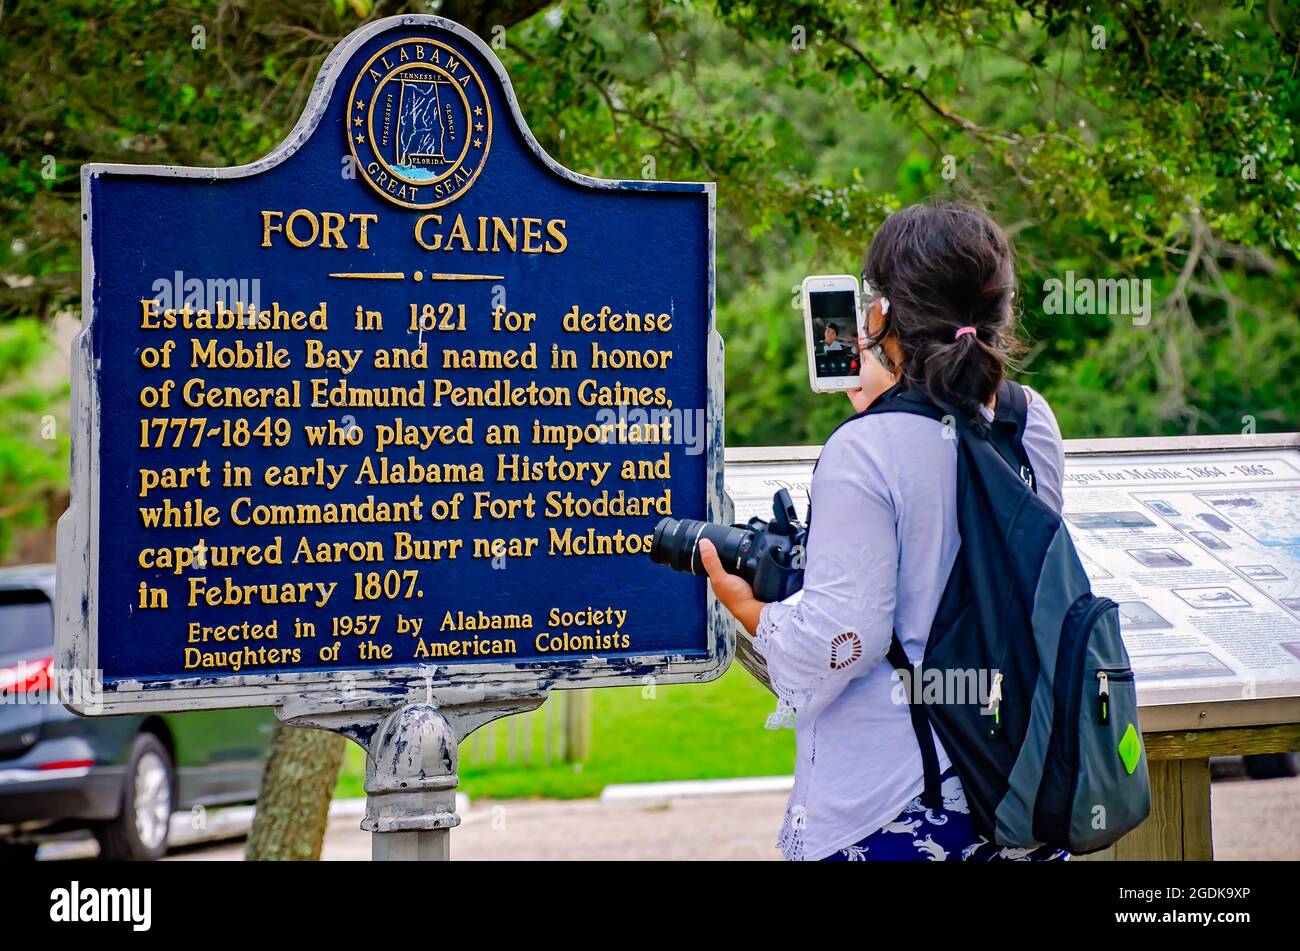 Ein Tourist verwendet Apple FaceTime, um eine Freundin zu videospielen und ihre Sicht auf den historischen Marker von Fort Gaines am 12. August 2021 in Dauphin Island, Alabama, zu teilen. Stockfoto